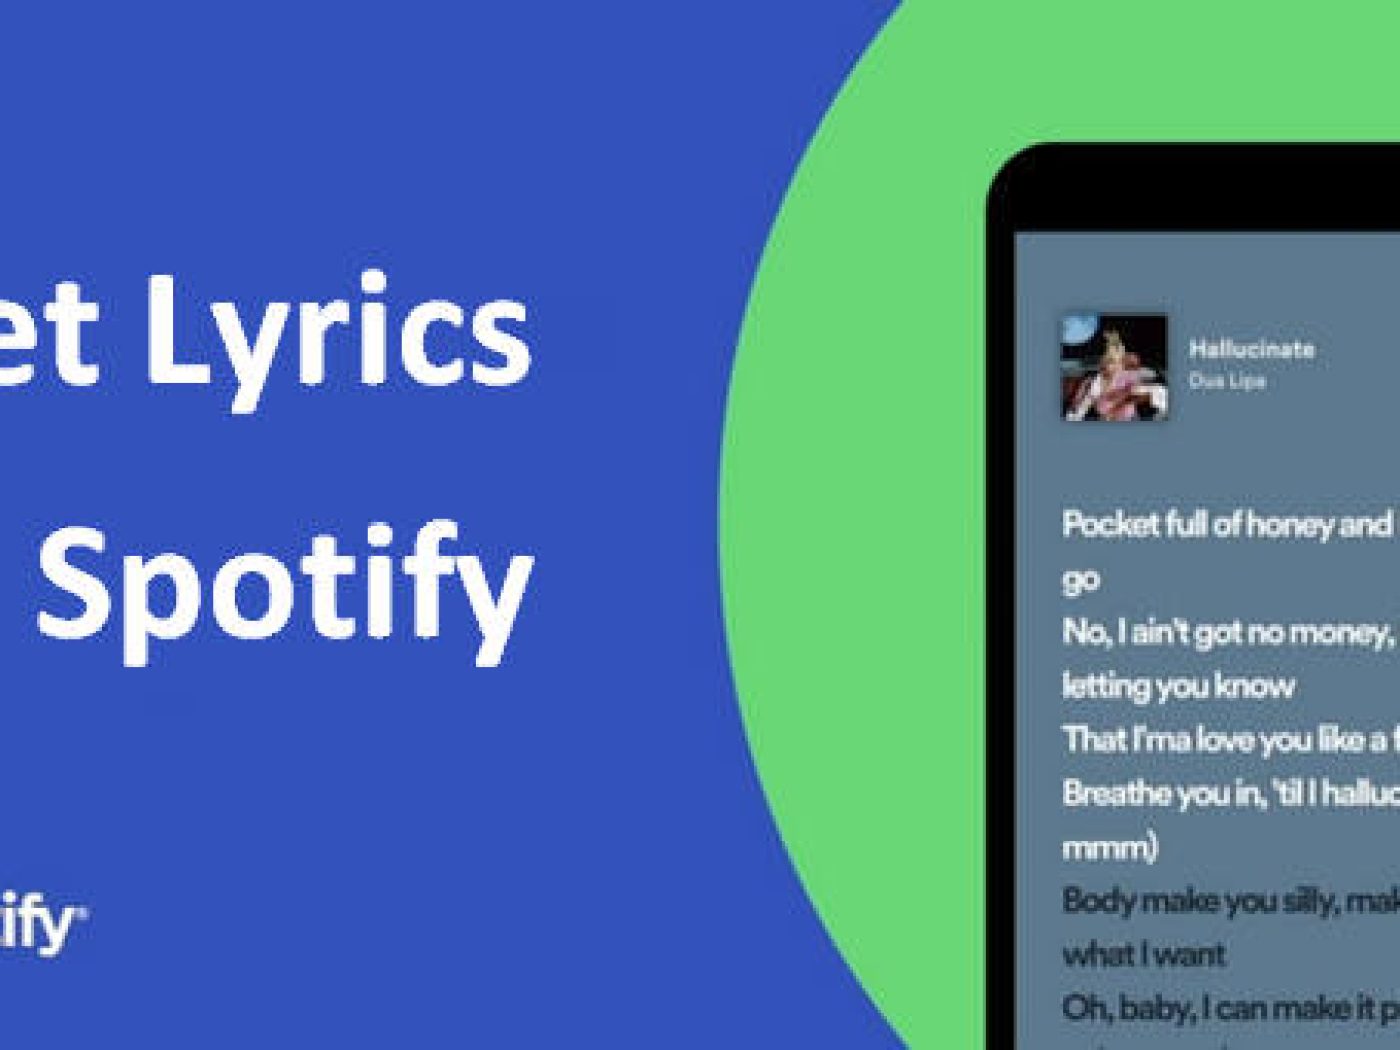 Spotify blocked by Google Smart Lock